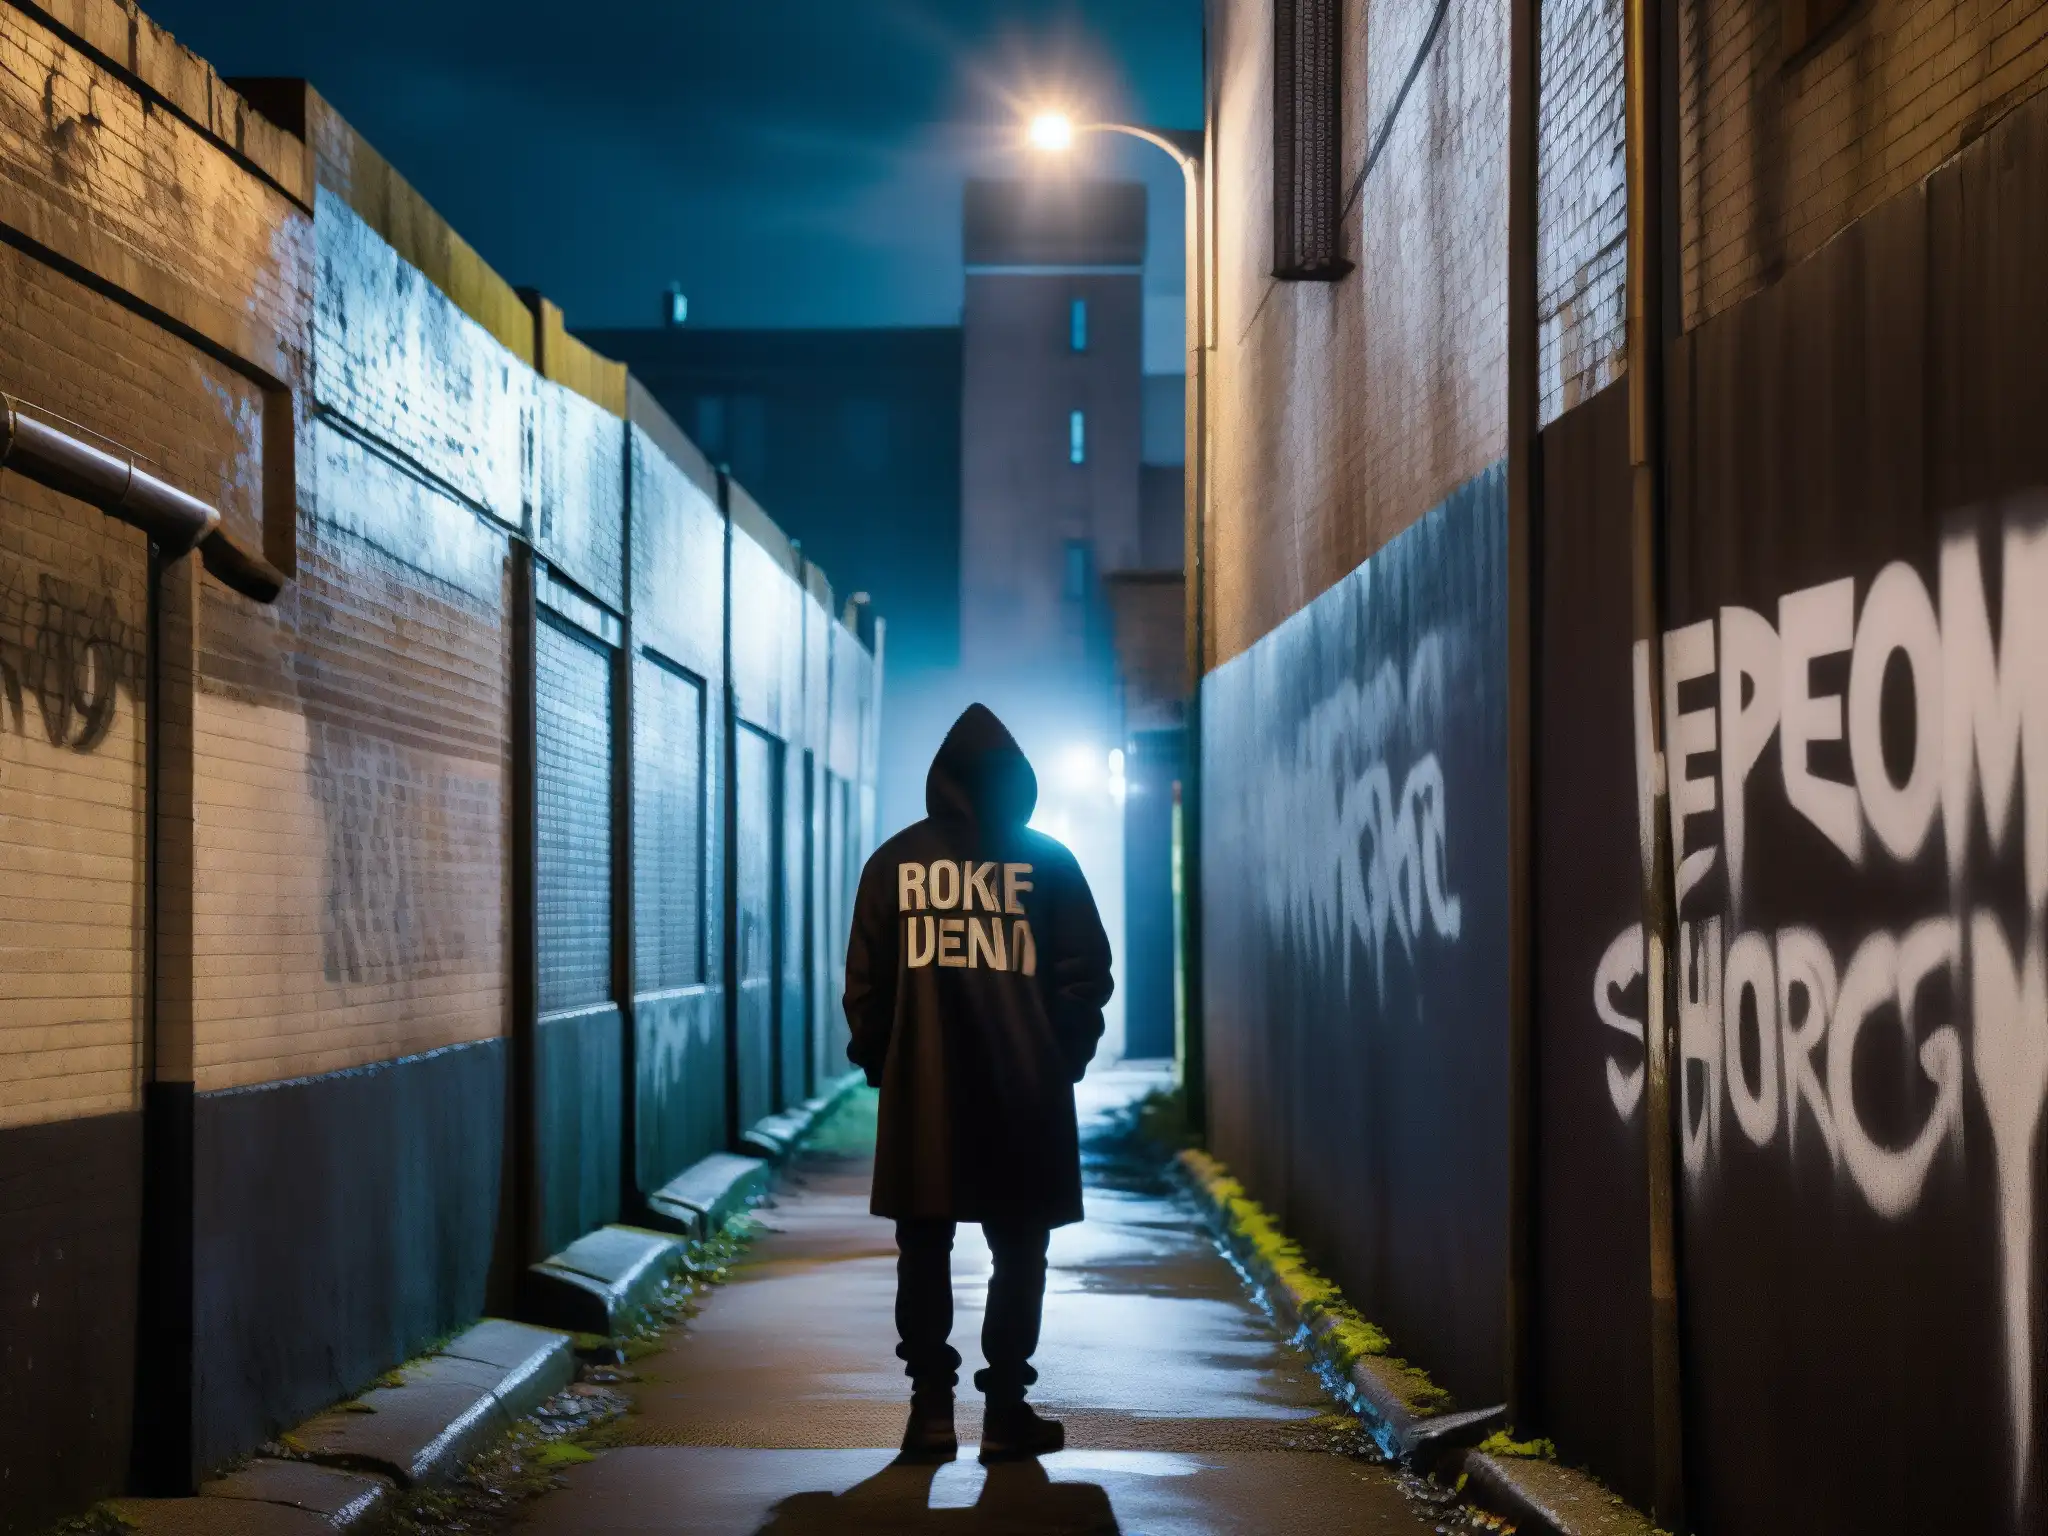 Un callejón sombrío y misterioso con paredes llenas de graffiti y una figura solitaria en la distancia, evocando leyendas urbanas nacidas en Twitter